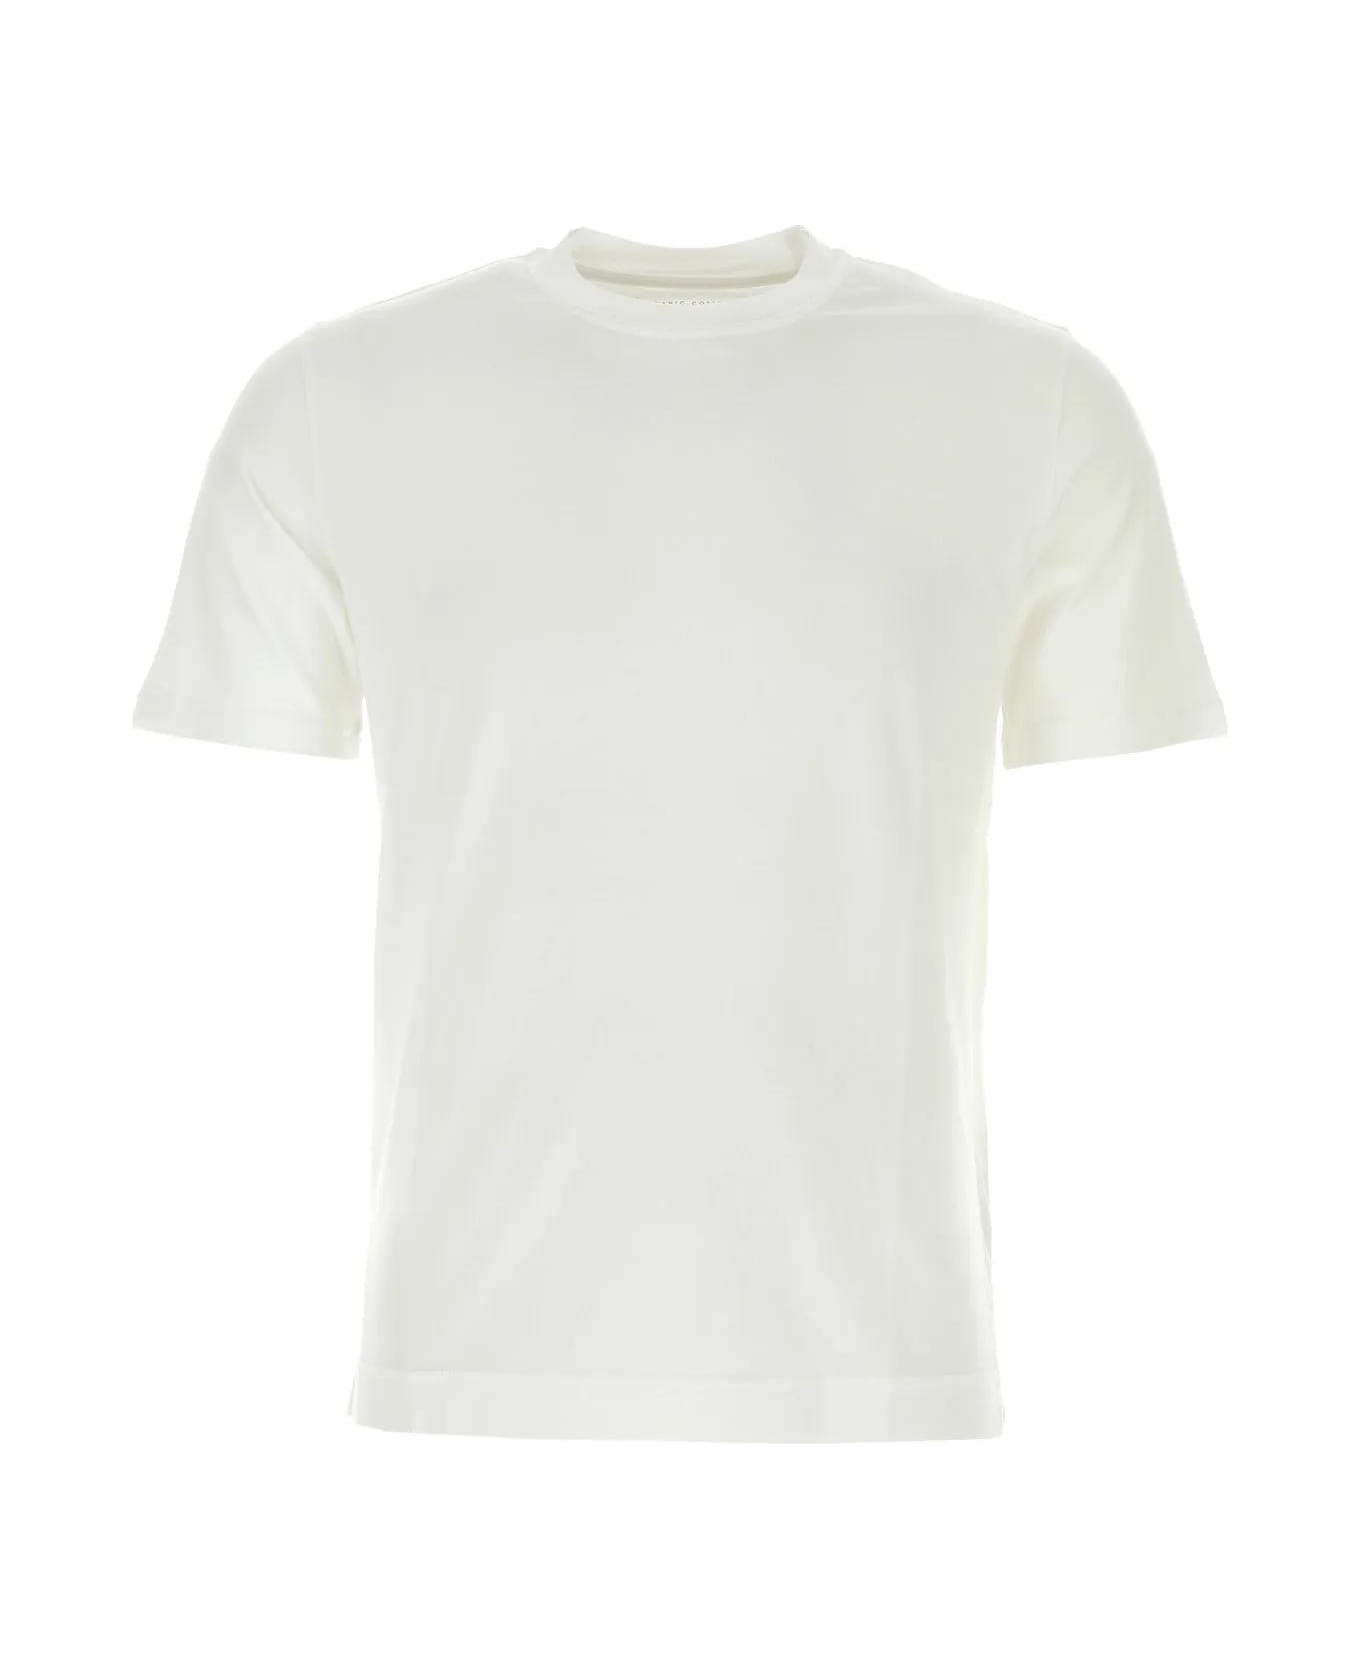 Fedeli White Cotton T-shirt - WHITE